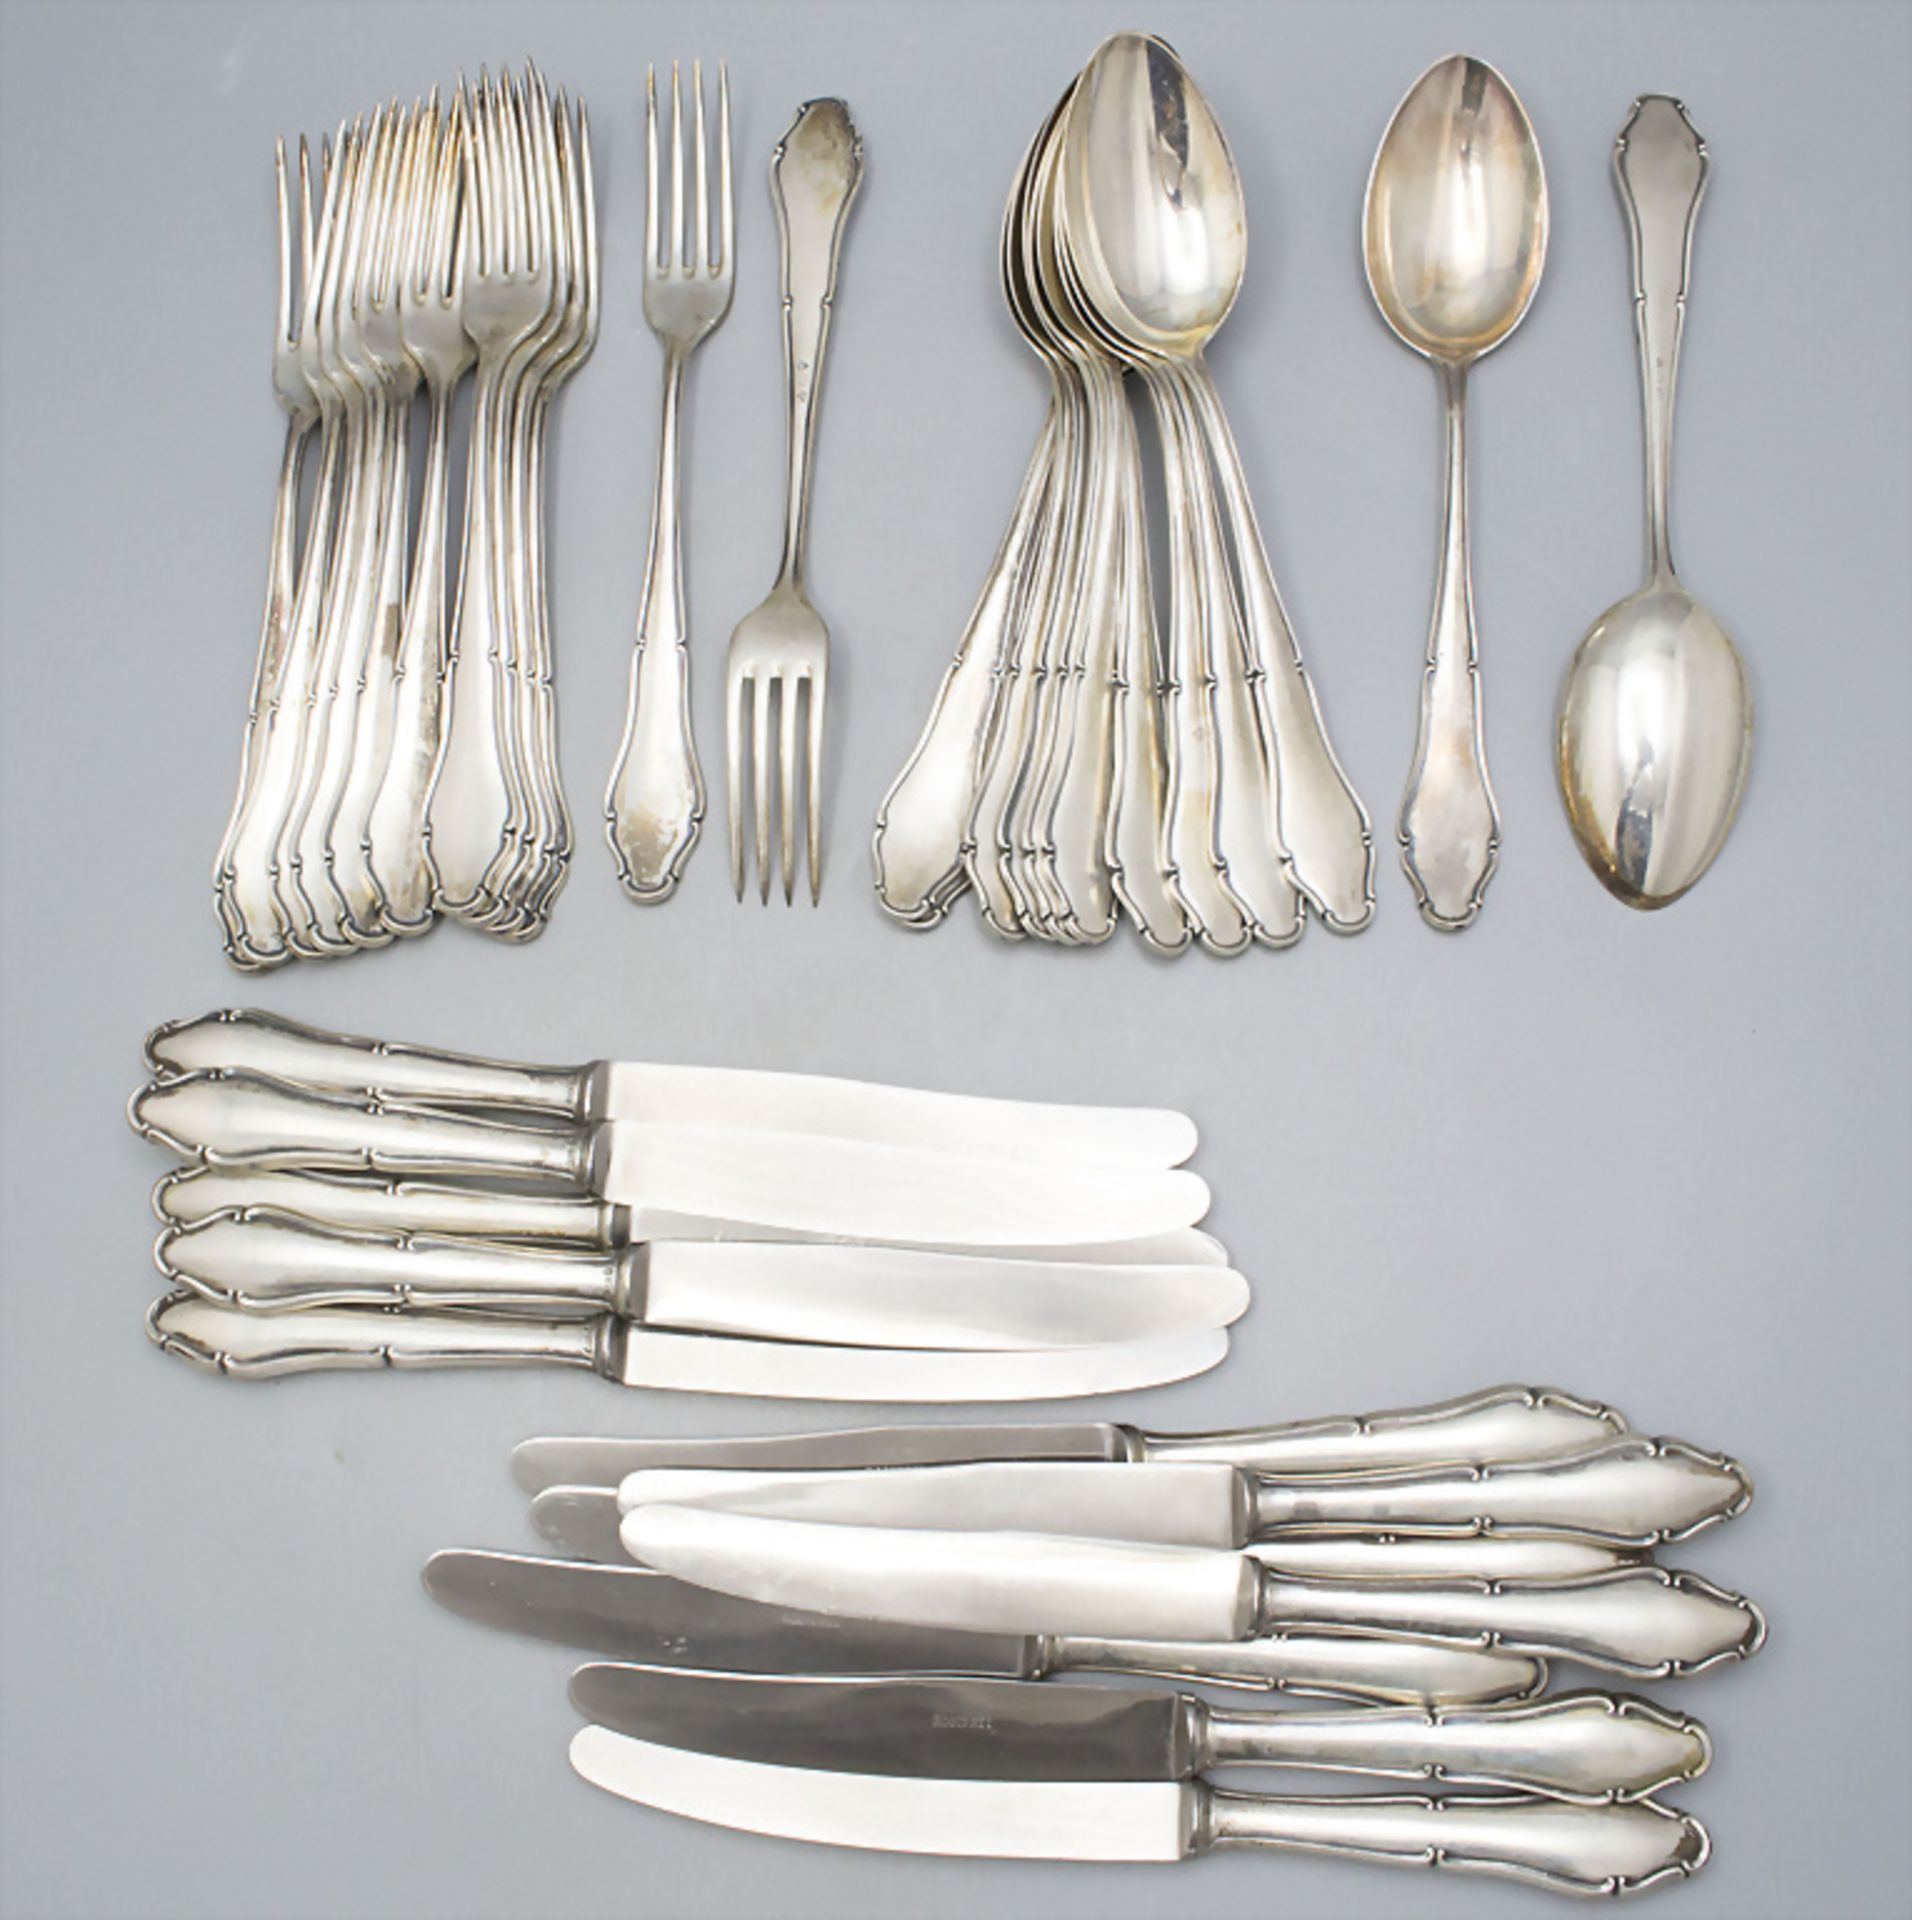 Silberbesteck für 12 Personen / 36 pieces of silver cutlery, Lutz & Weiss, Pforzheim, um 1930